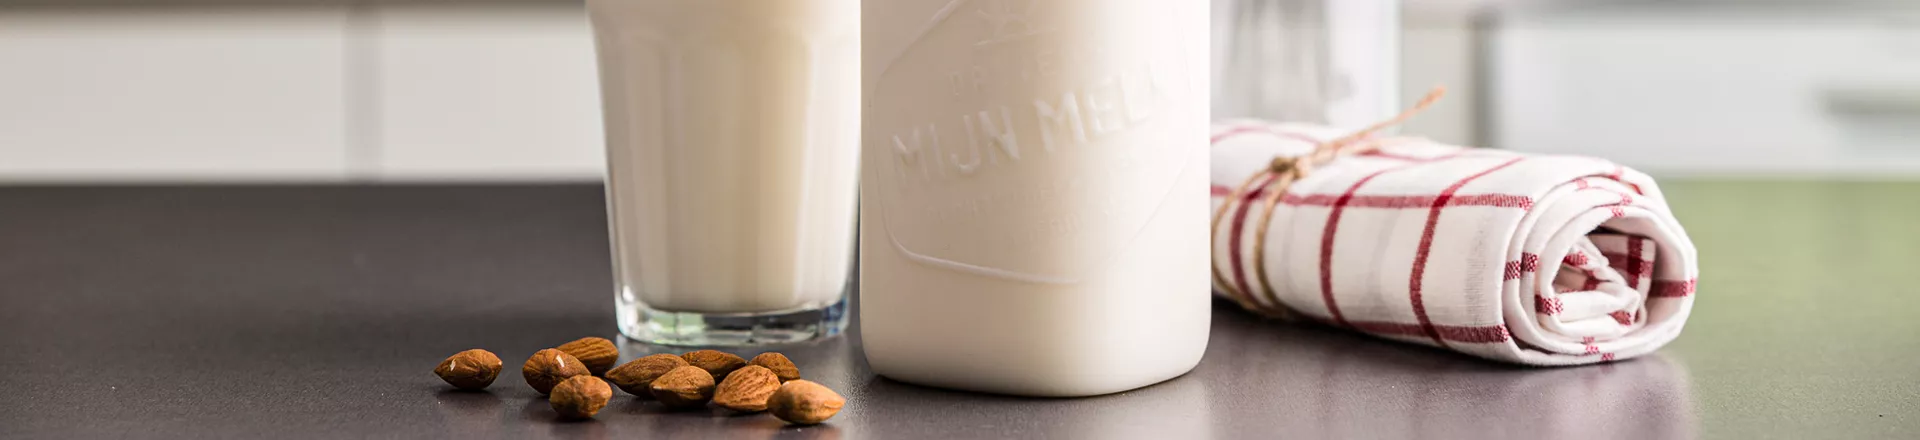 Mjölkflaska i PET till mejeriprodukter och andra typer av vätskor